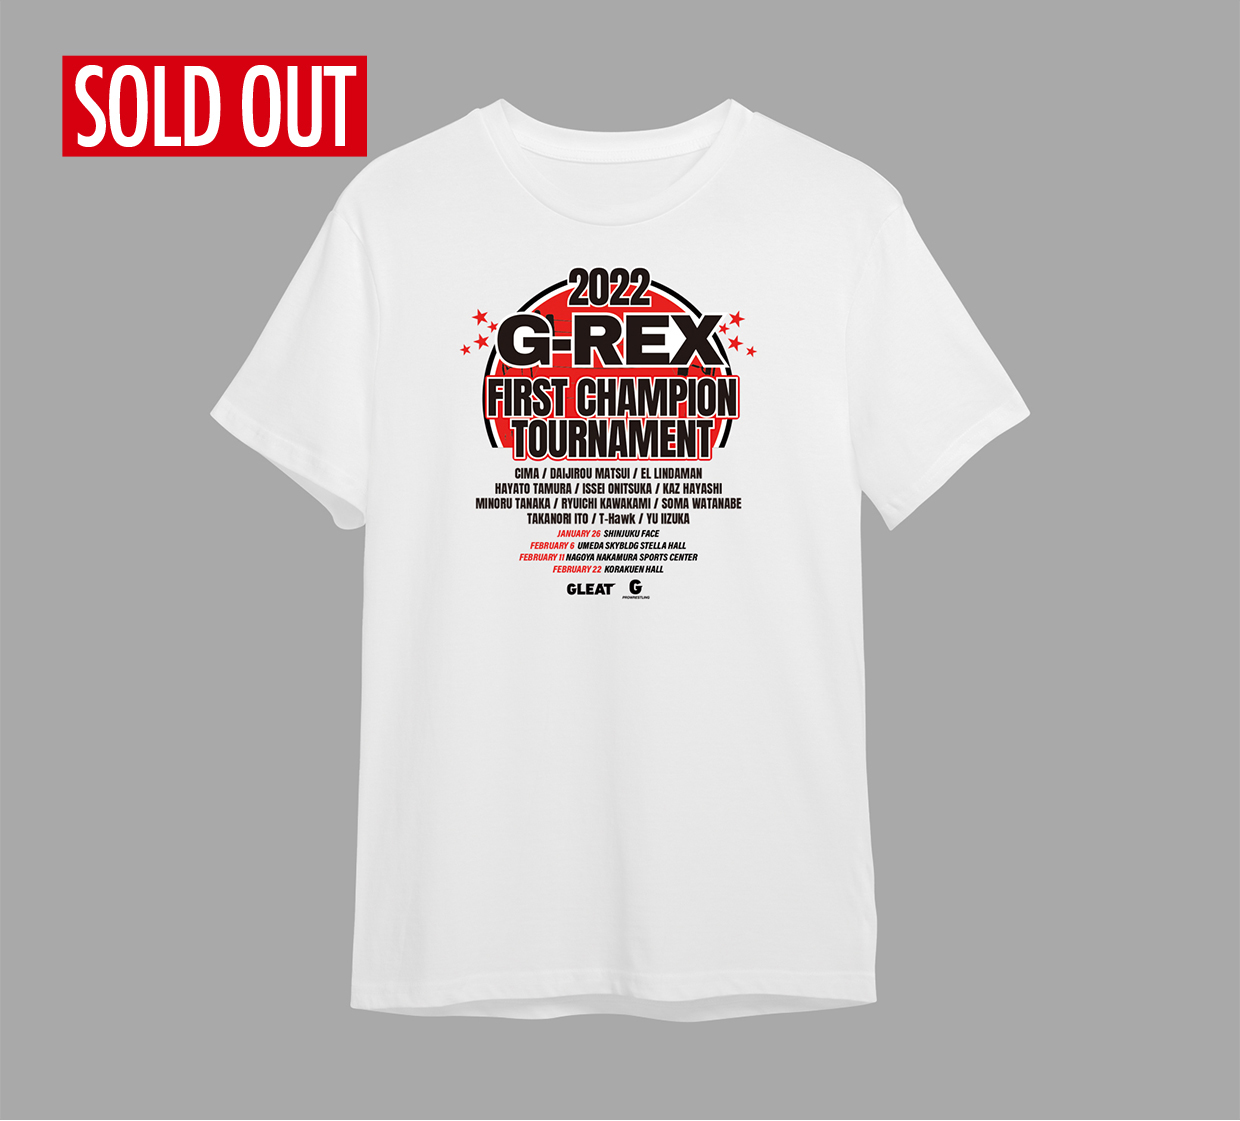 G-REX 大会記念Tシャツ画像